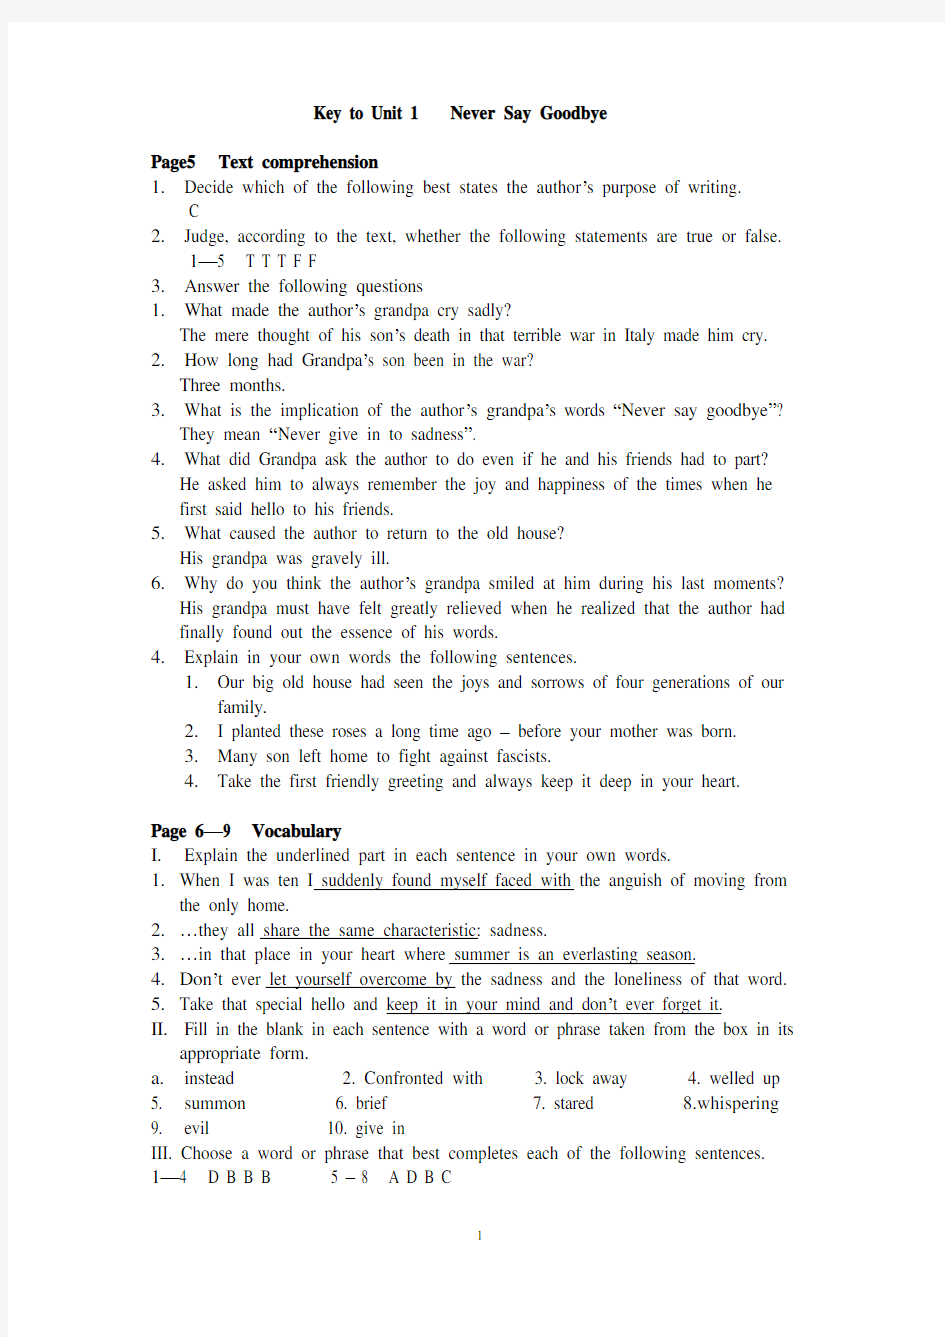 上外英语综合教程第1册第2版 Unit1、2、3、4、5 答案